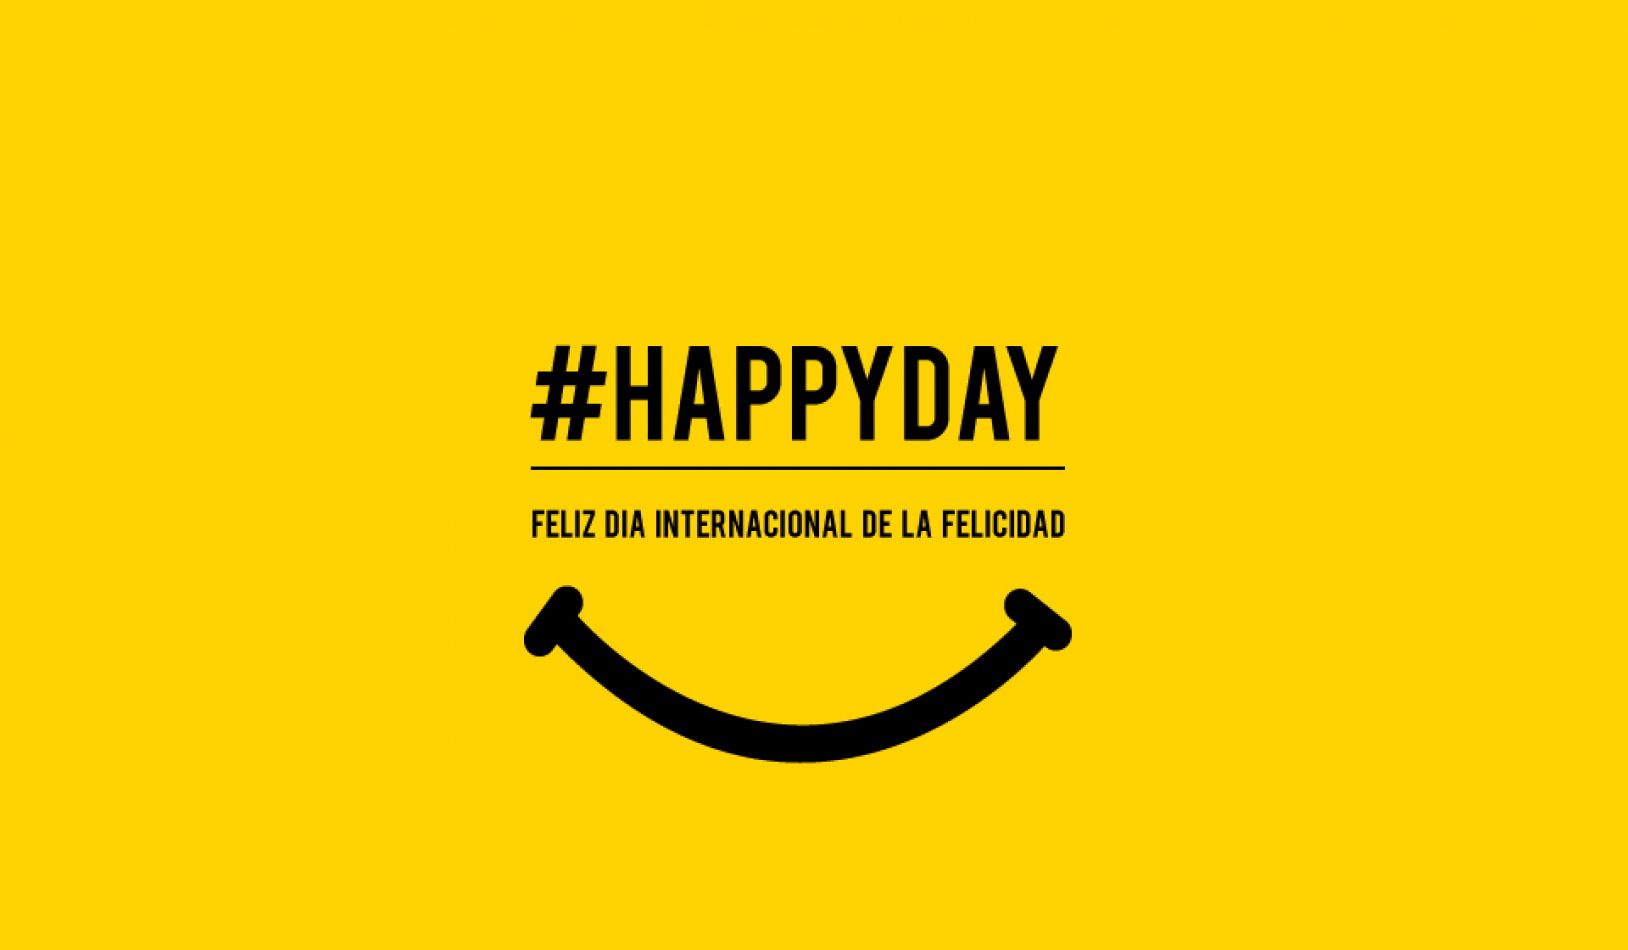 https://www.ahorasalta.com.ar/public/images/fotosdeldia/17-dia-internacional-de-la-felicidad.jpg